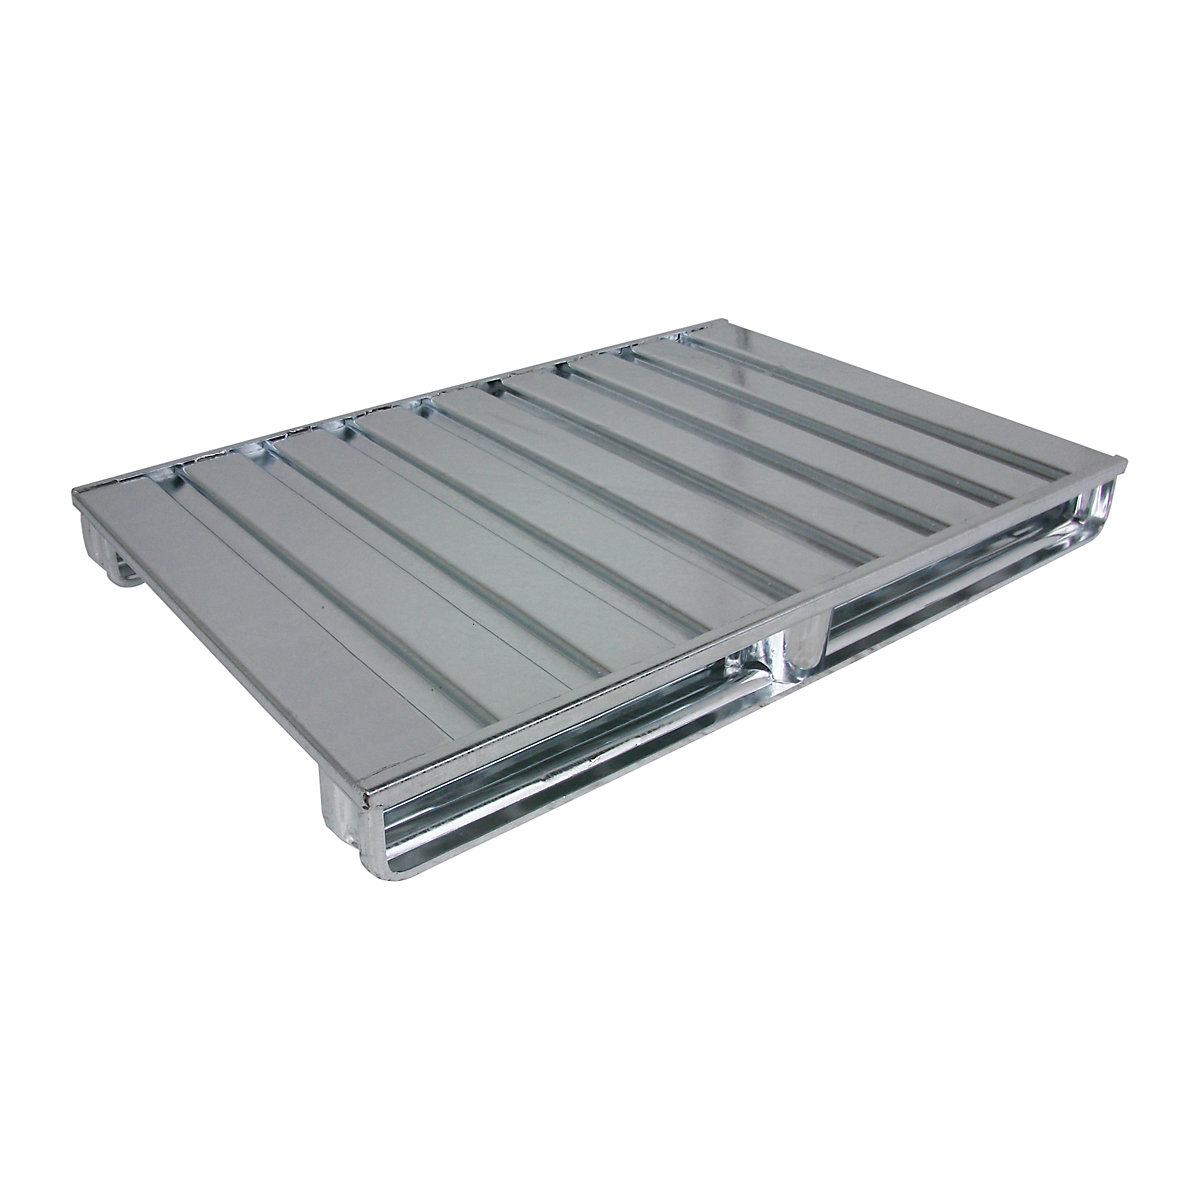 Palete plana de aço – Heson, CxL 1200 x 1000 mm, capacidade de carga 2000 kg, galvanizado-4